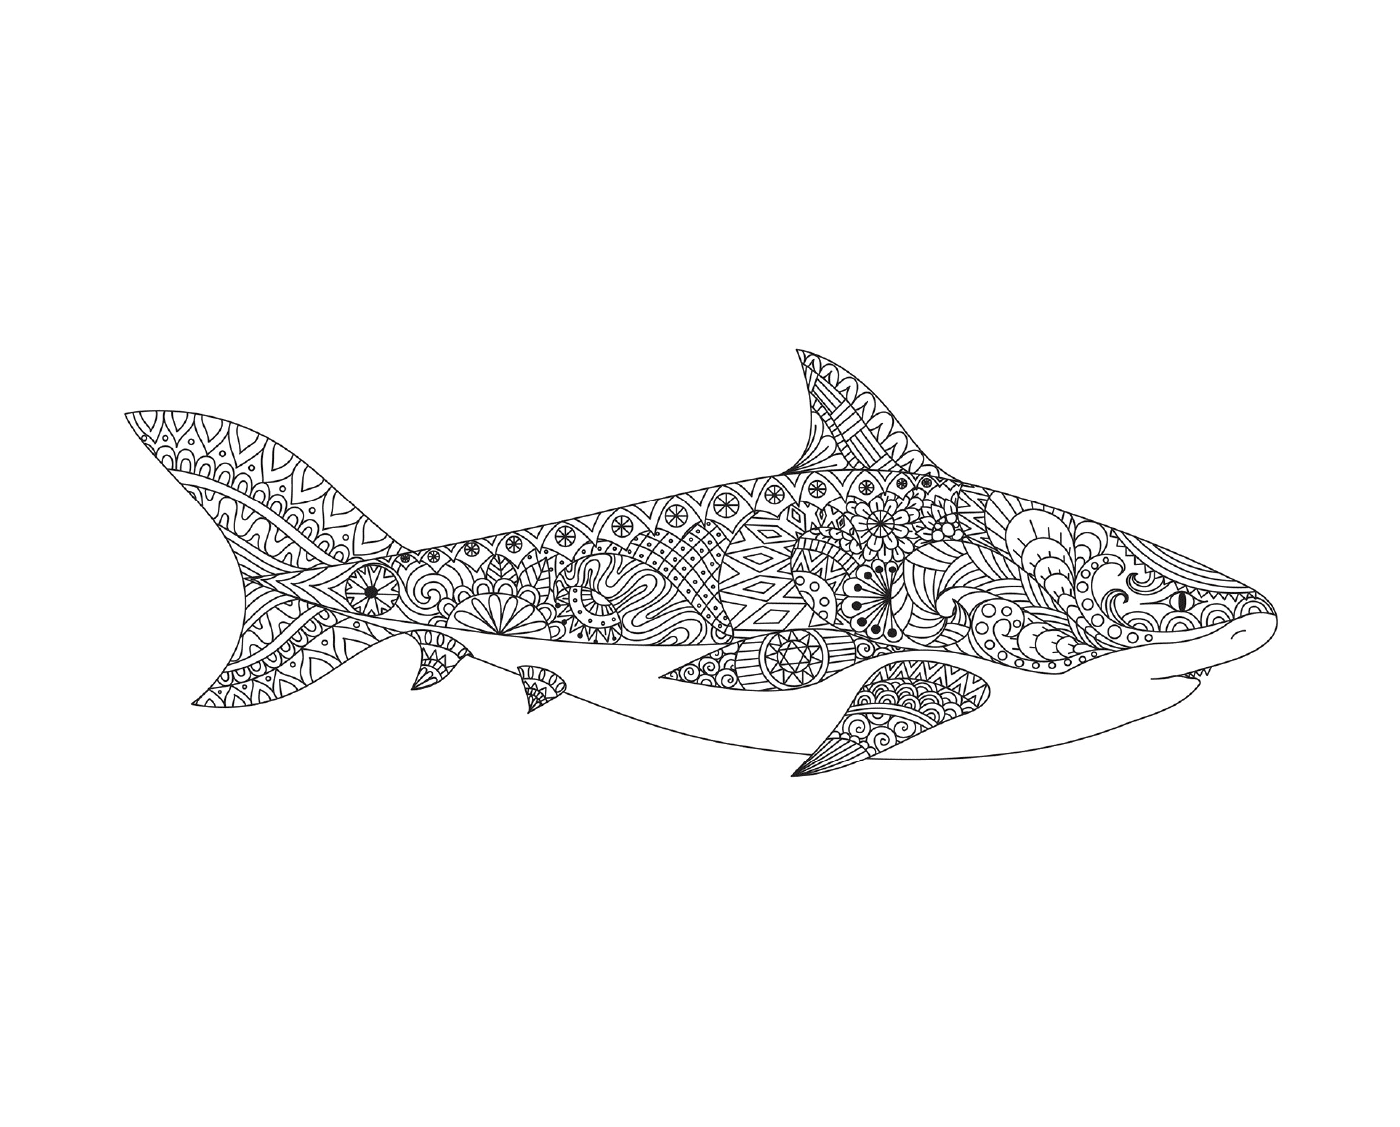  uma representação tatuada de um tubarão adulto com boca aberta 